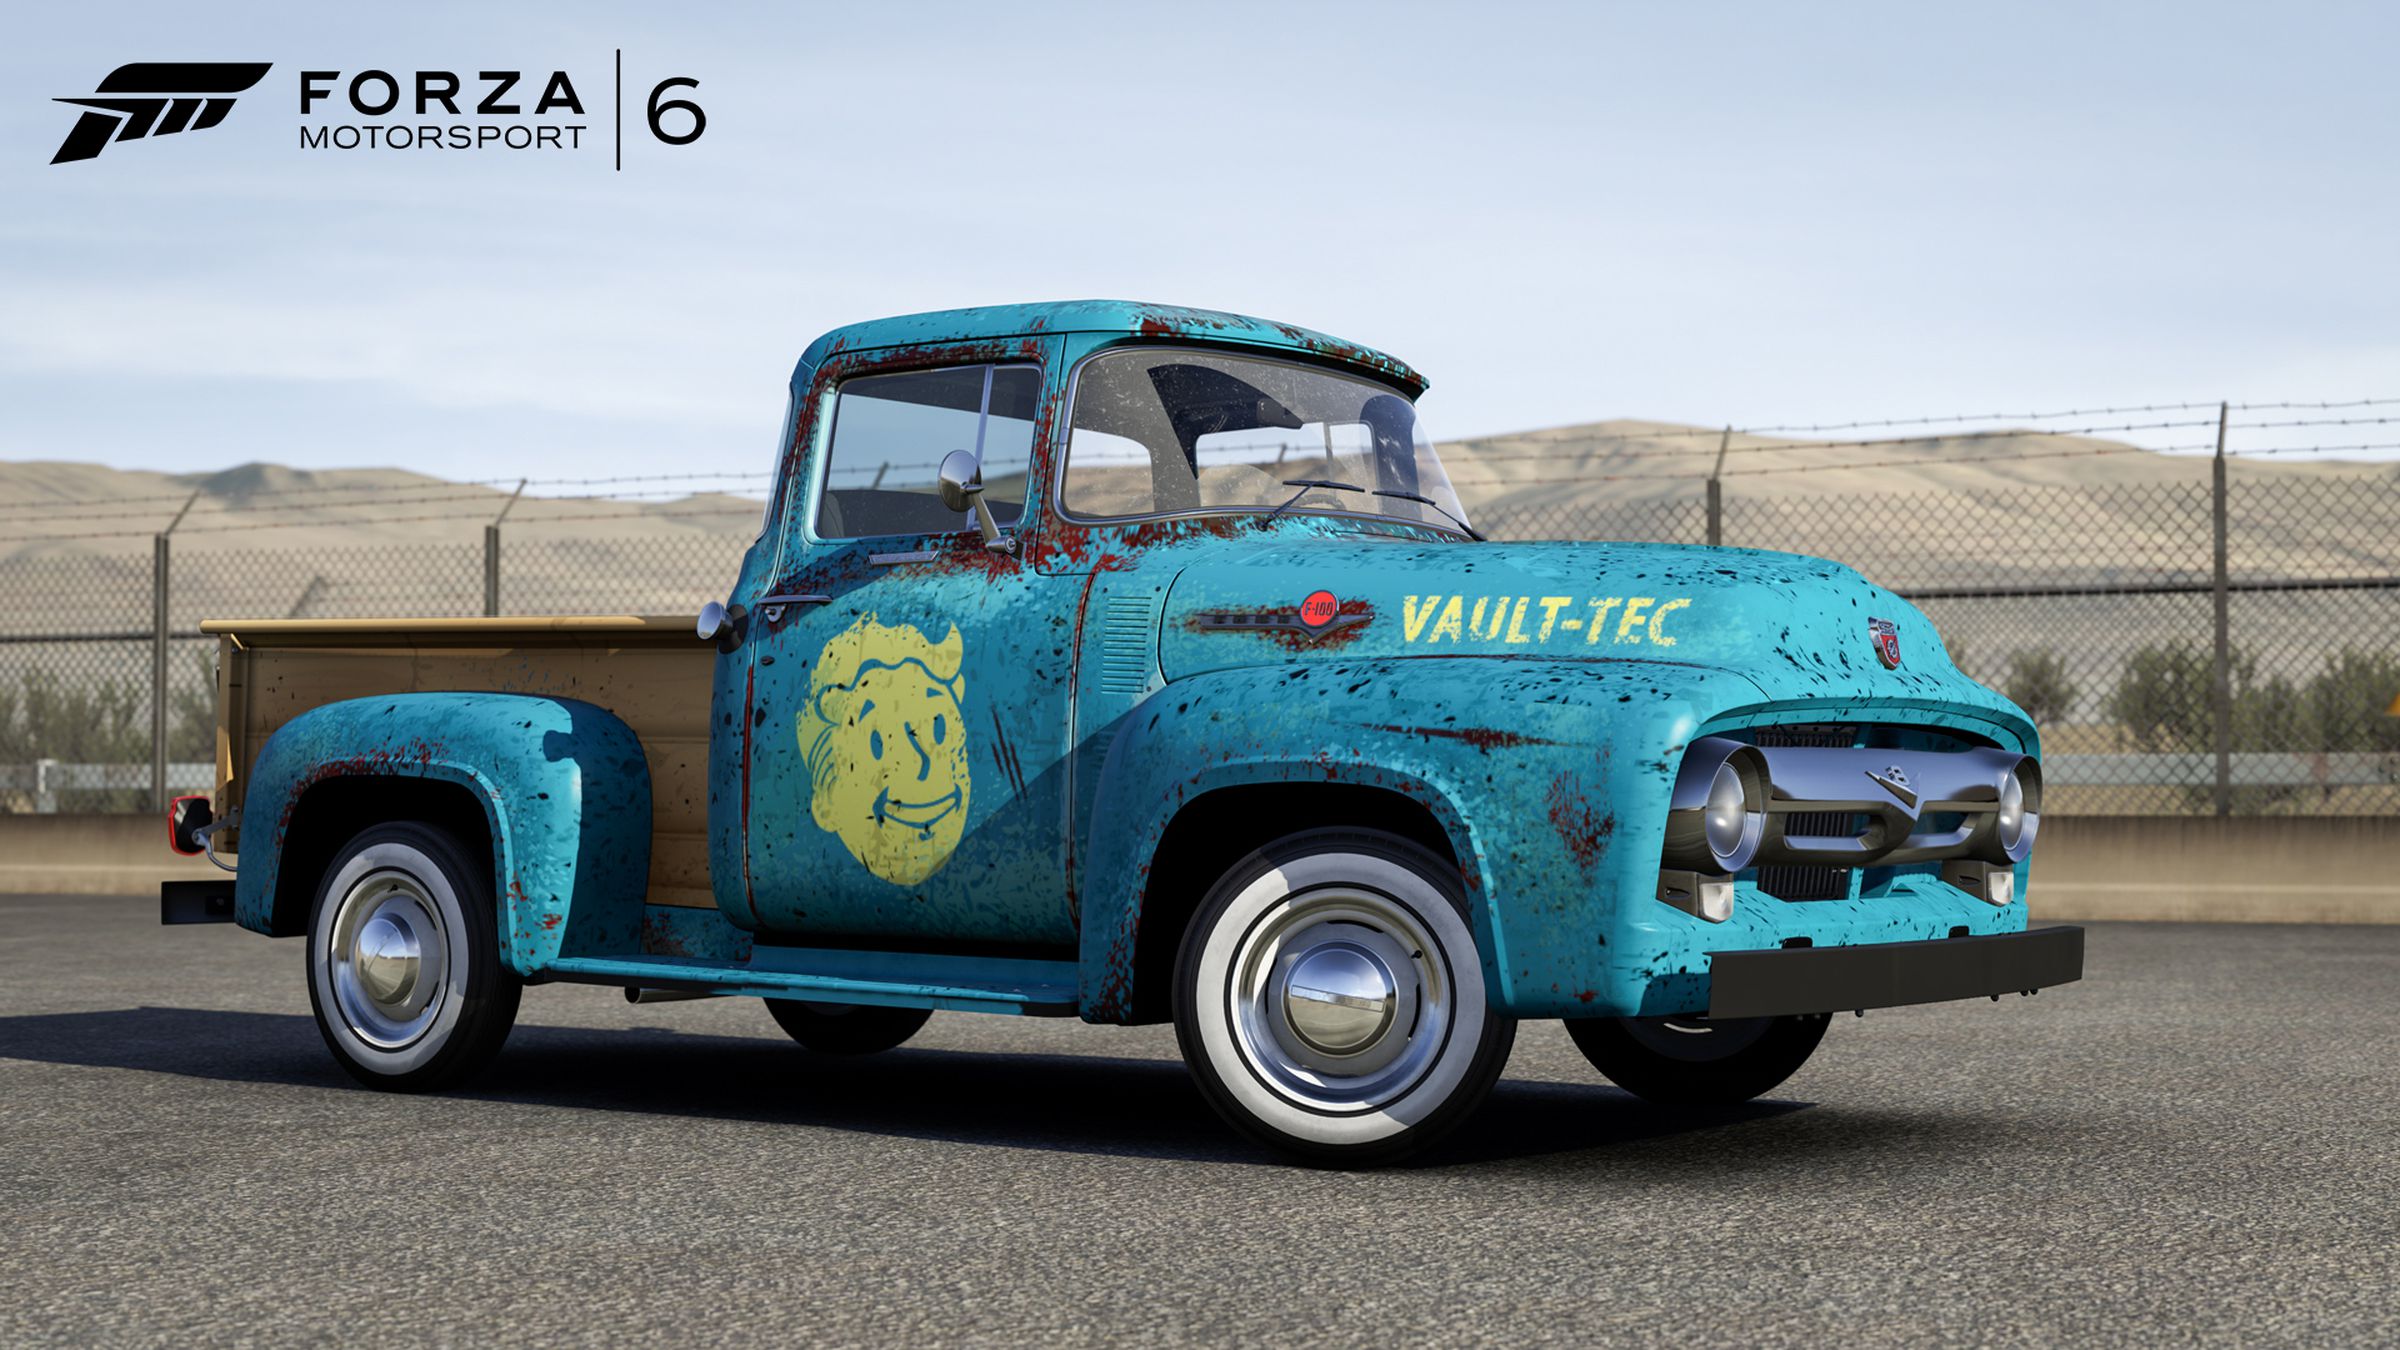 Fallout 4 Forza car